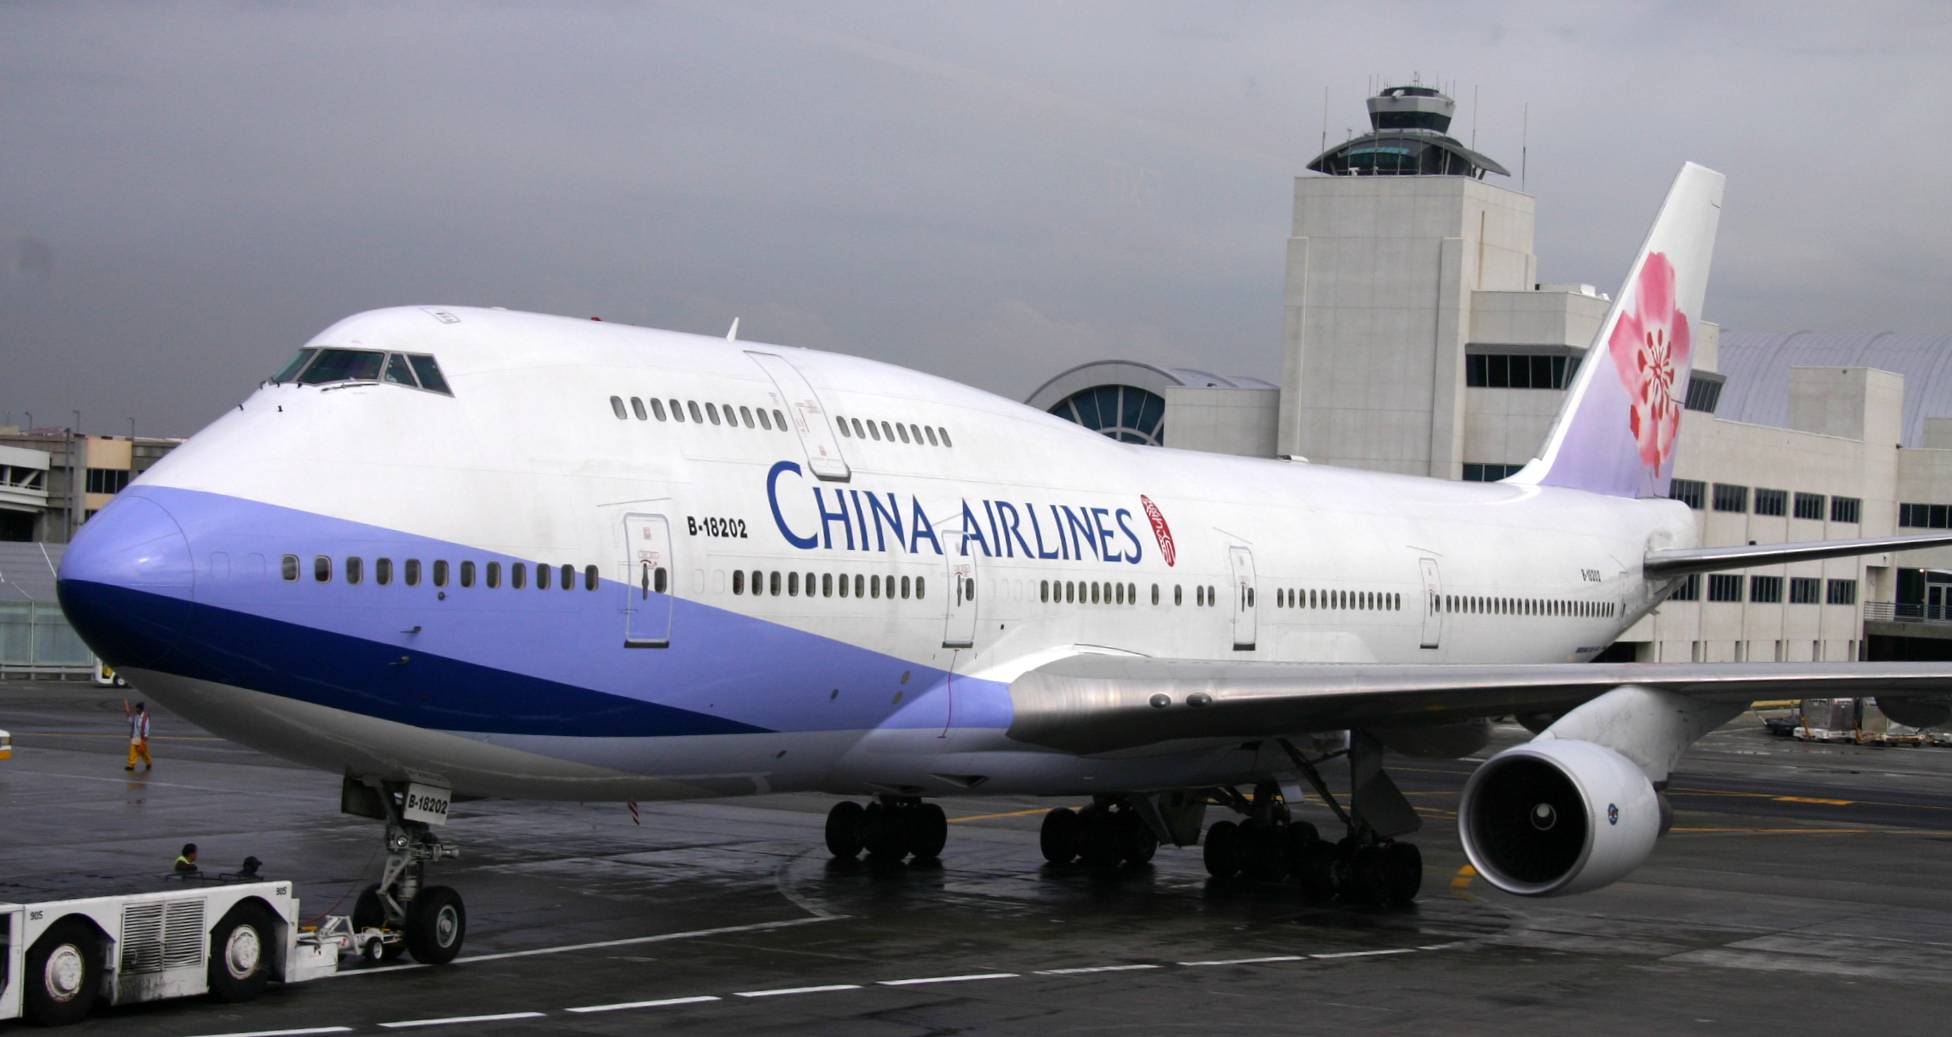 中華航空 China Airlines